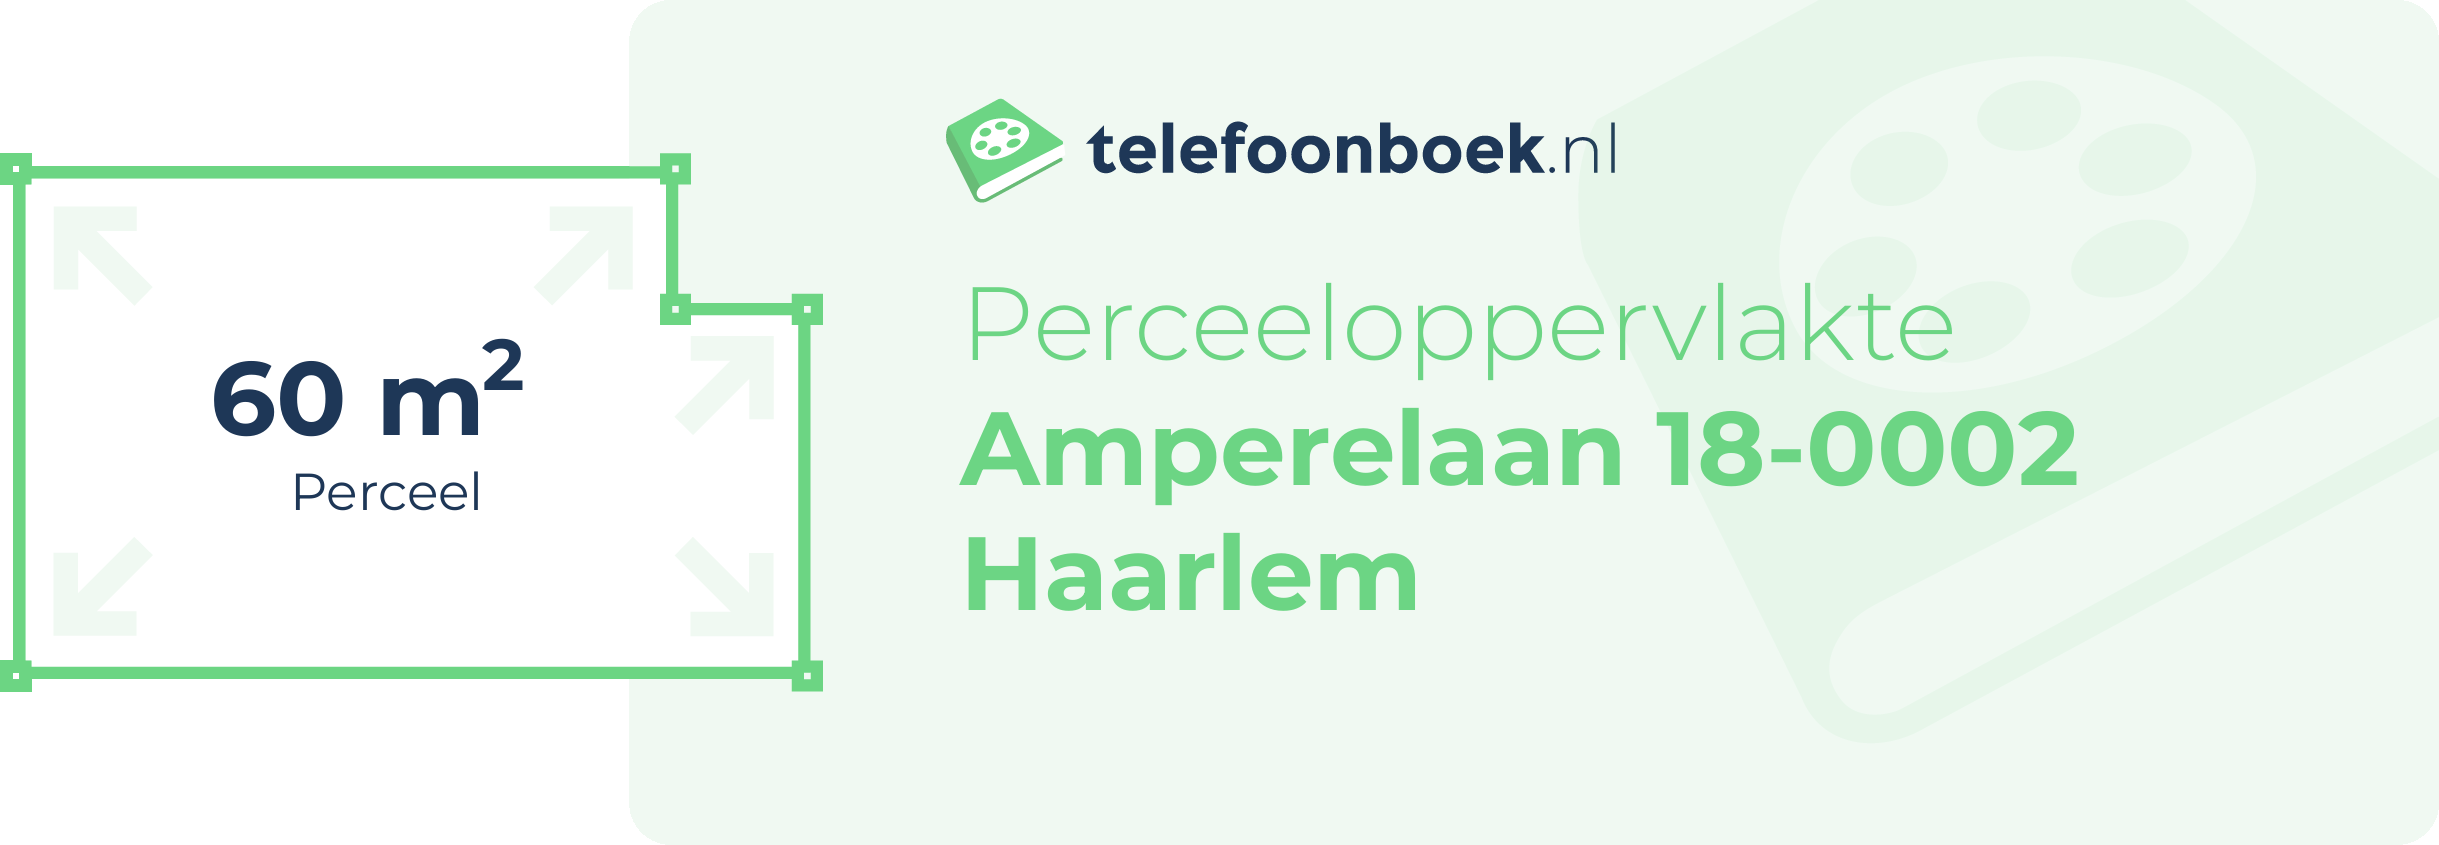 Perceeloppervlakte Amperelaan 18-0002 Haarlem